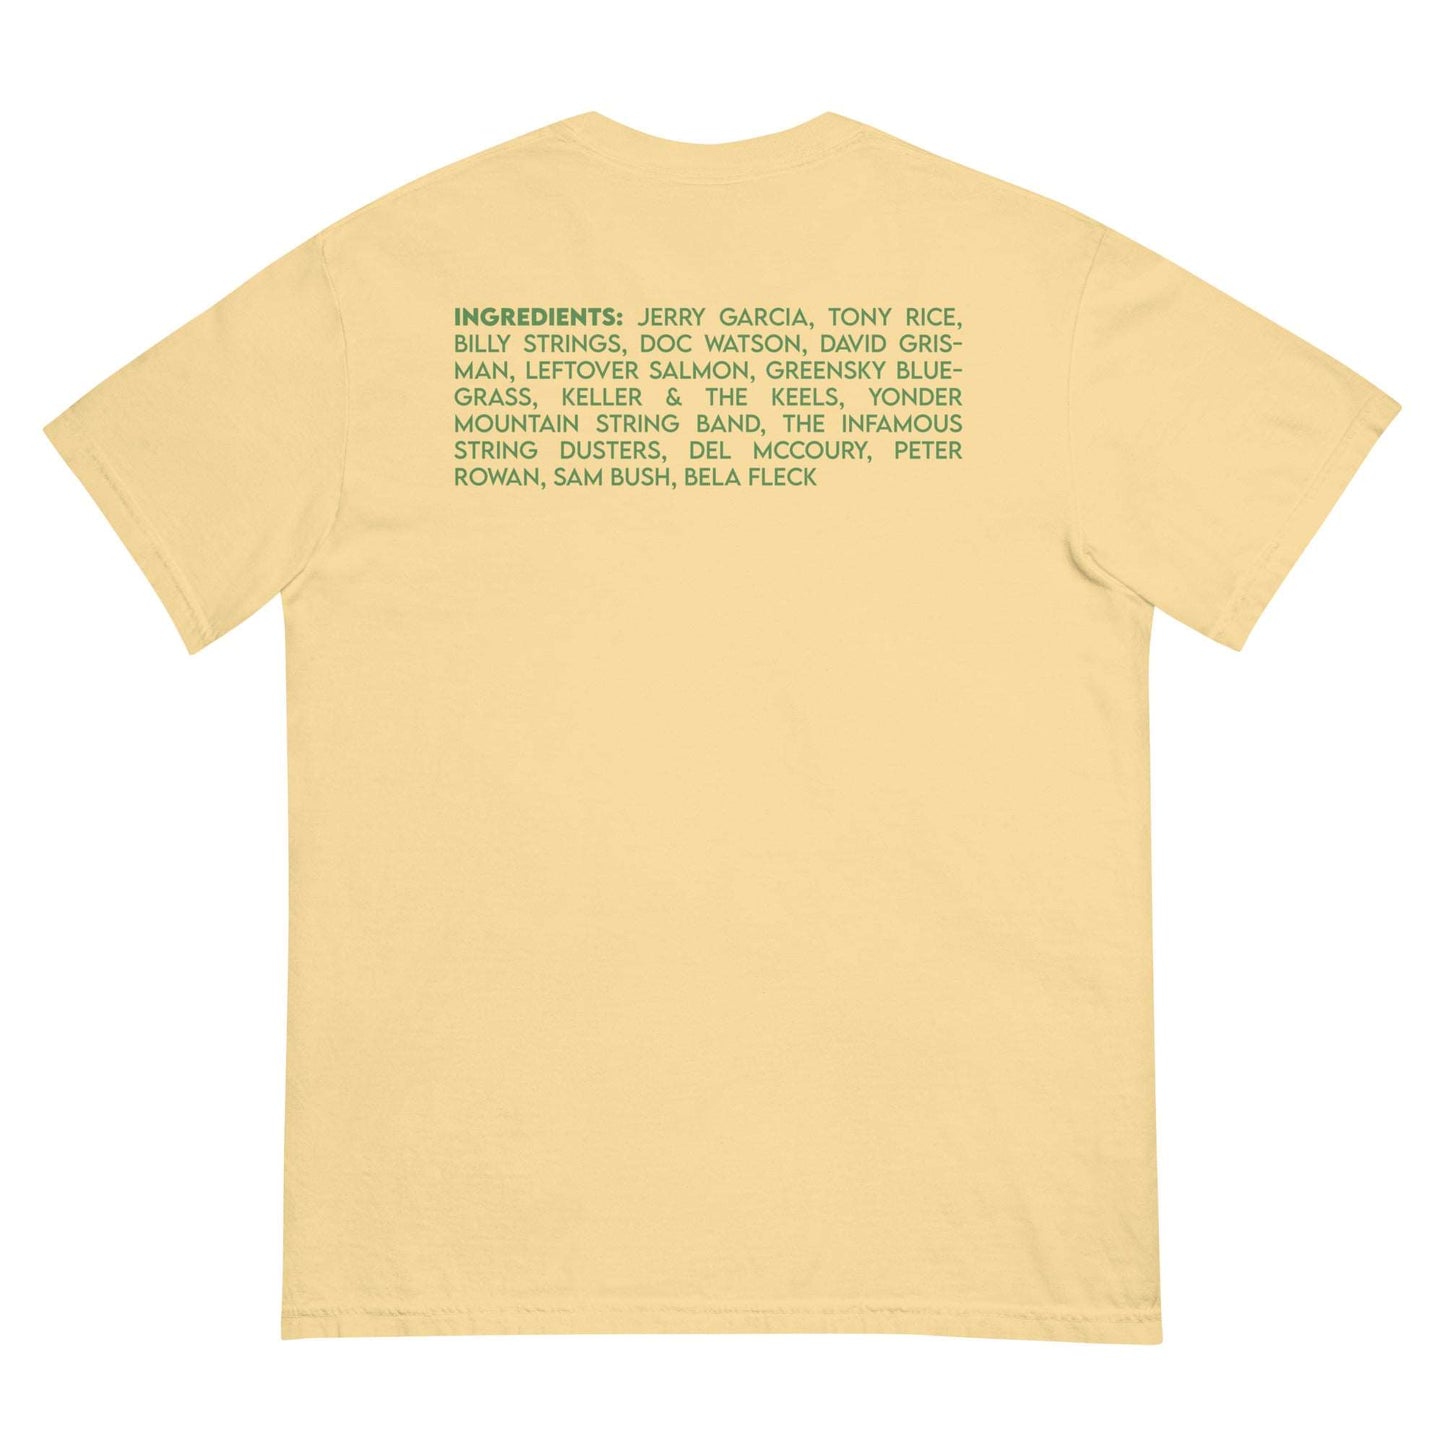 Jamgrass T-Shirt